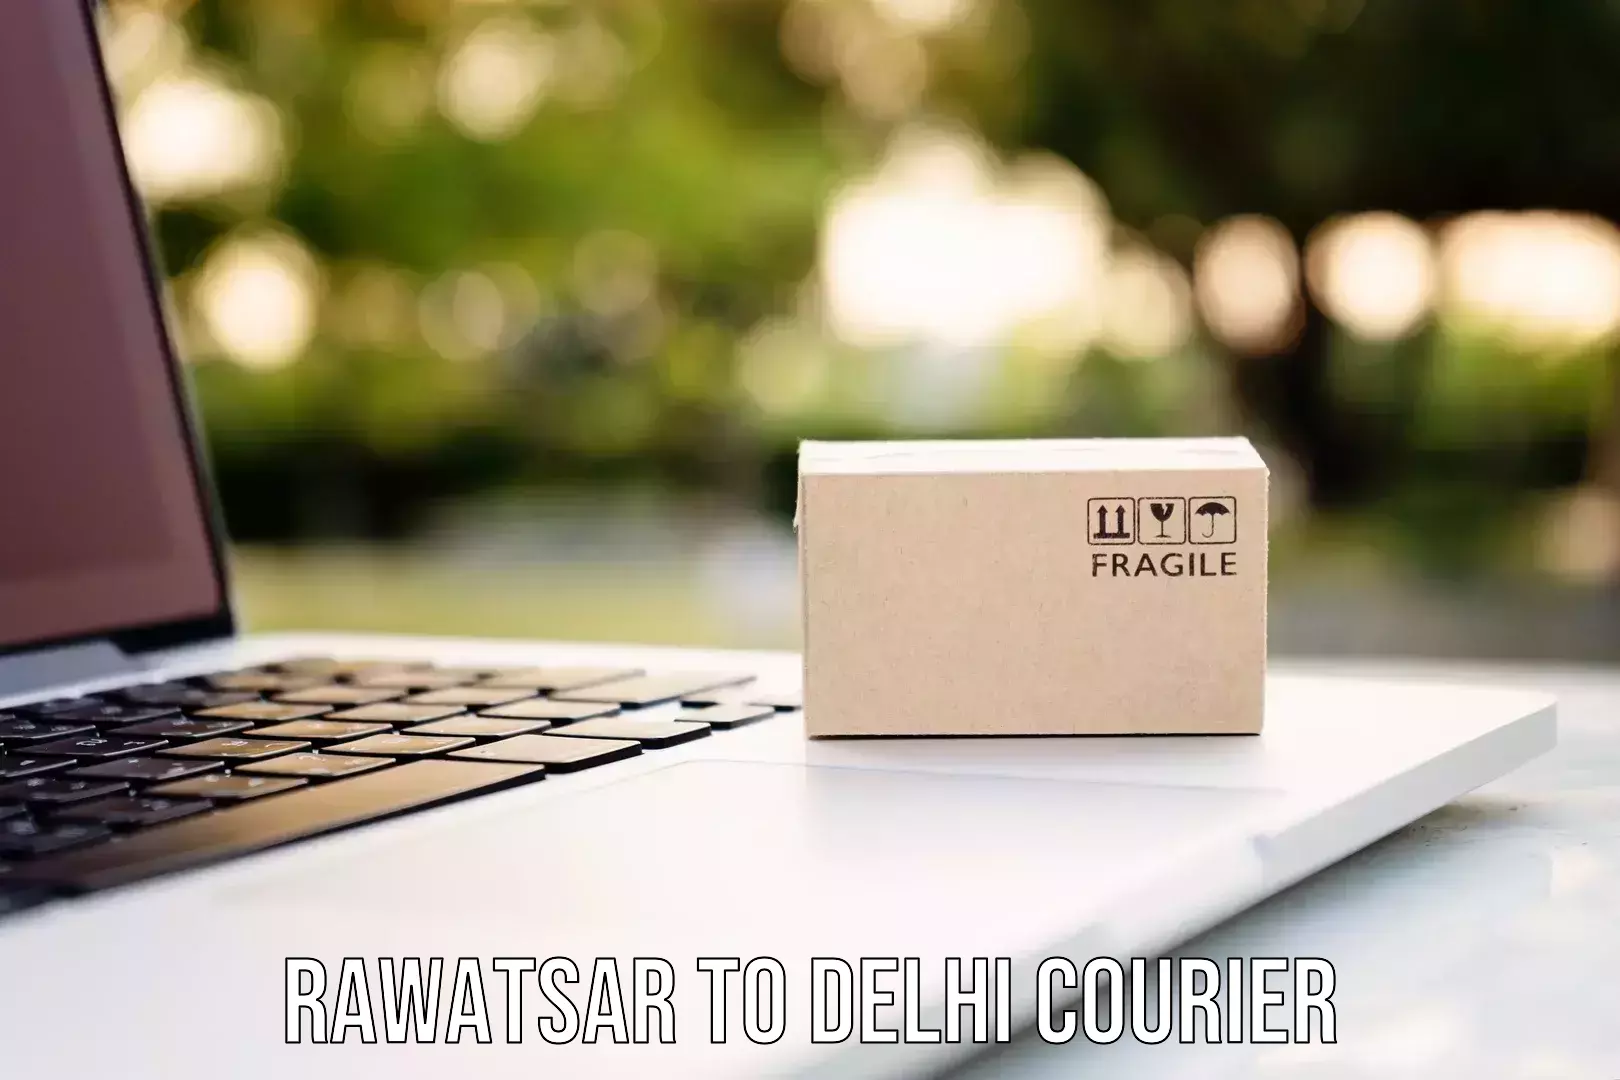 Nationwide shipping capabilities Rawatsar to Jamia Millia Islamia New Delhi